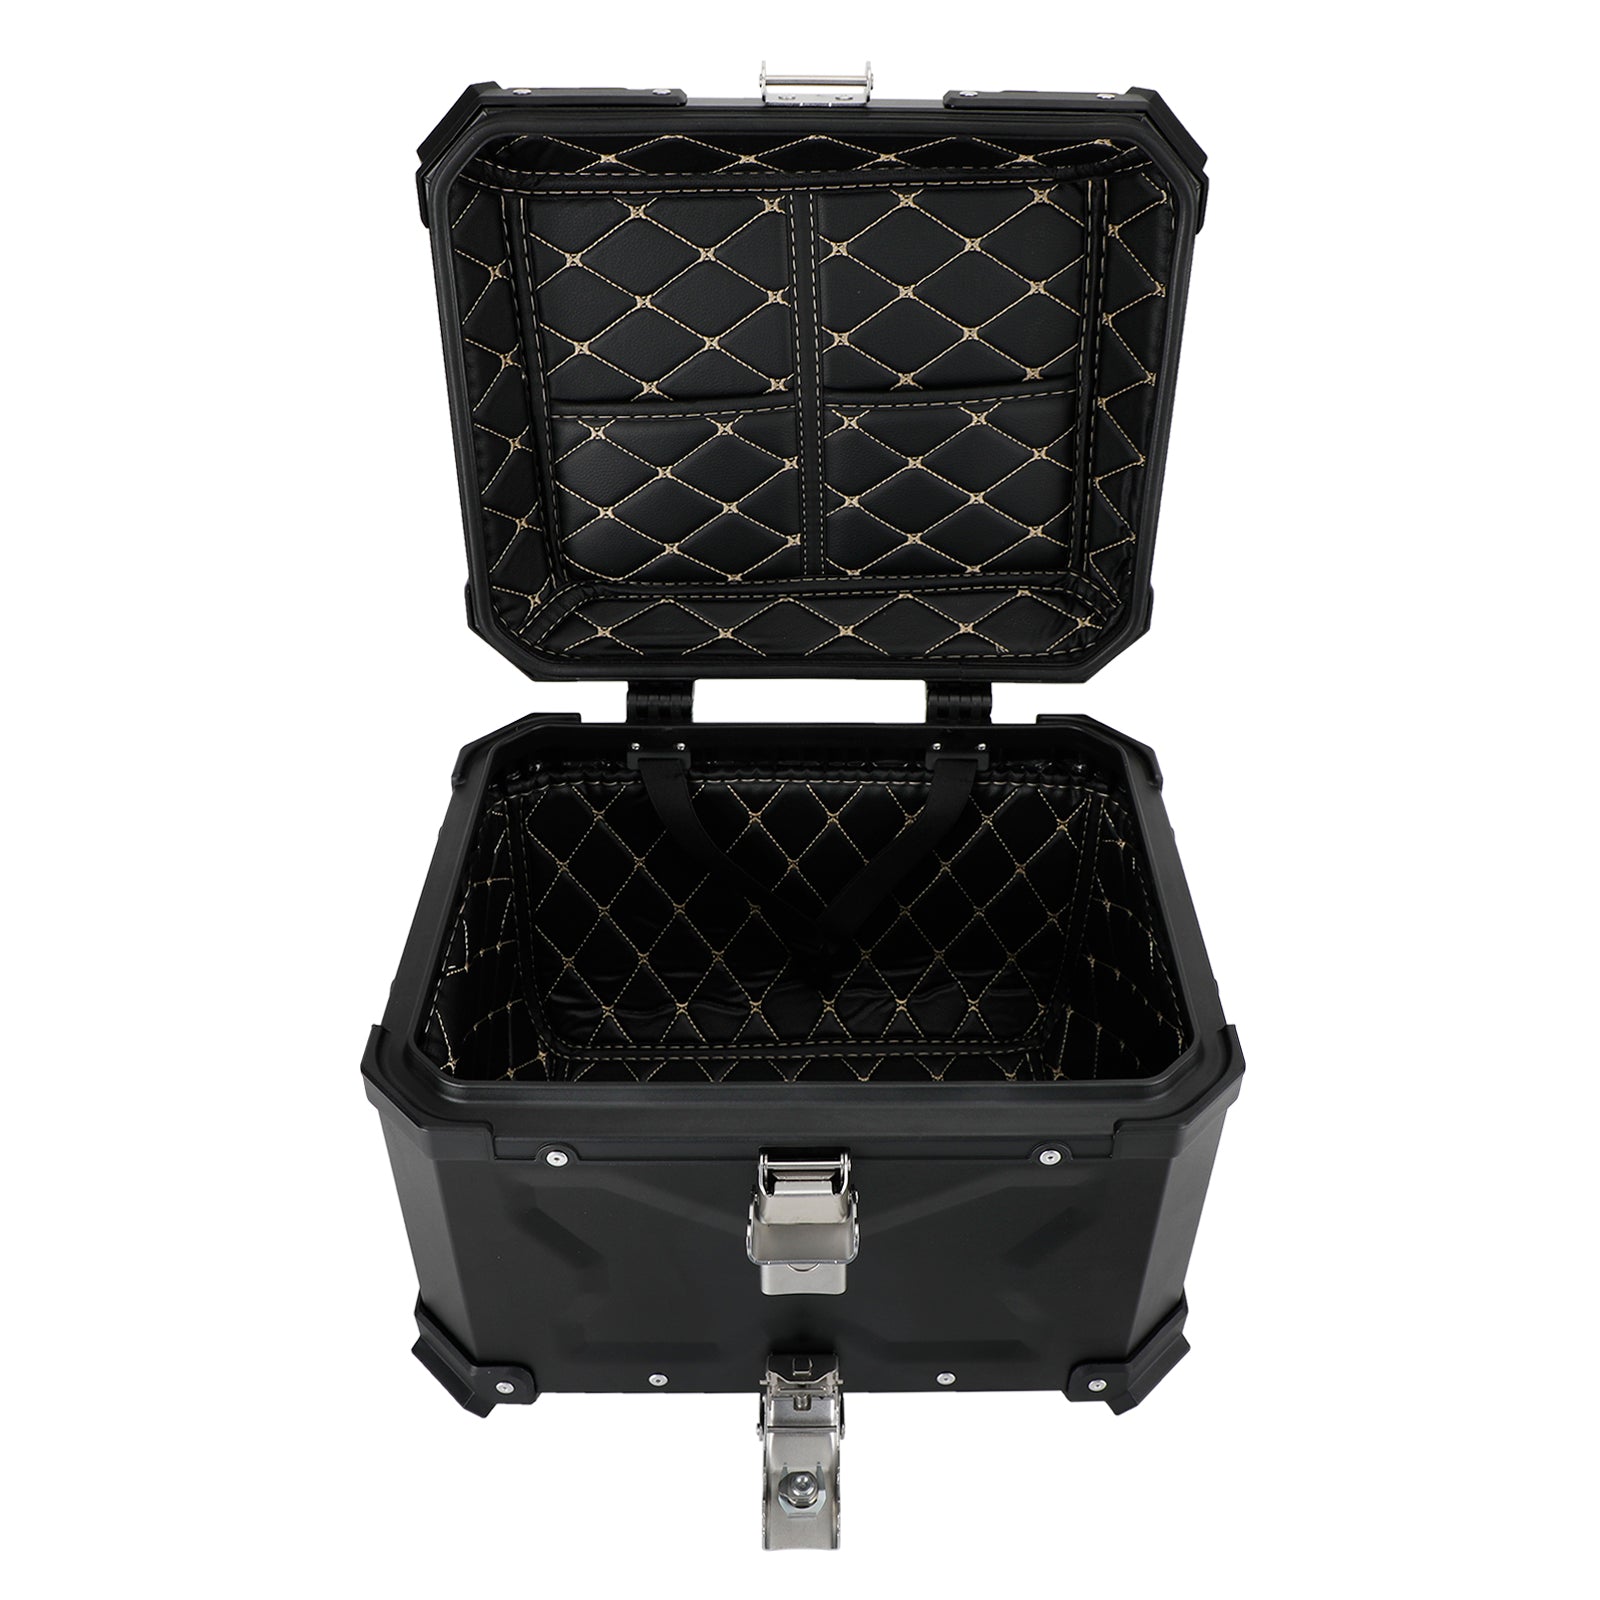 Pack Baule Baule posteriore Box portabagagli superiore universale per Bmw R1200GS R1250GS F750GS 65L